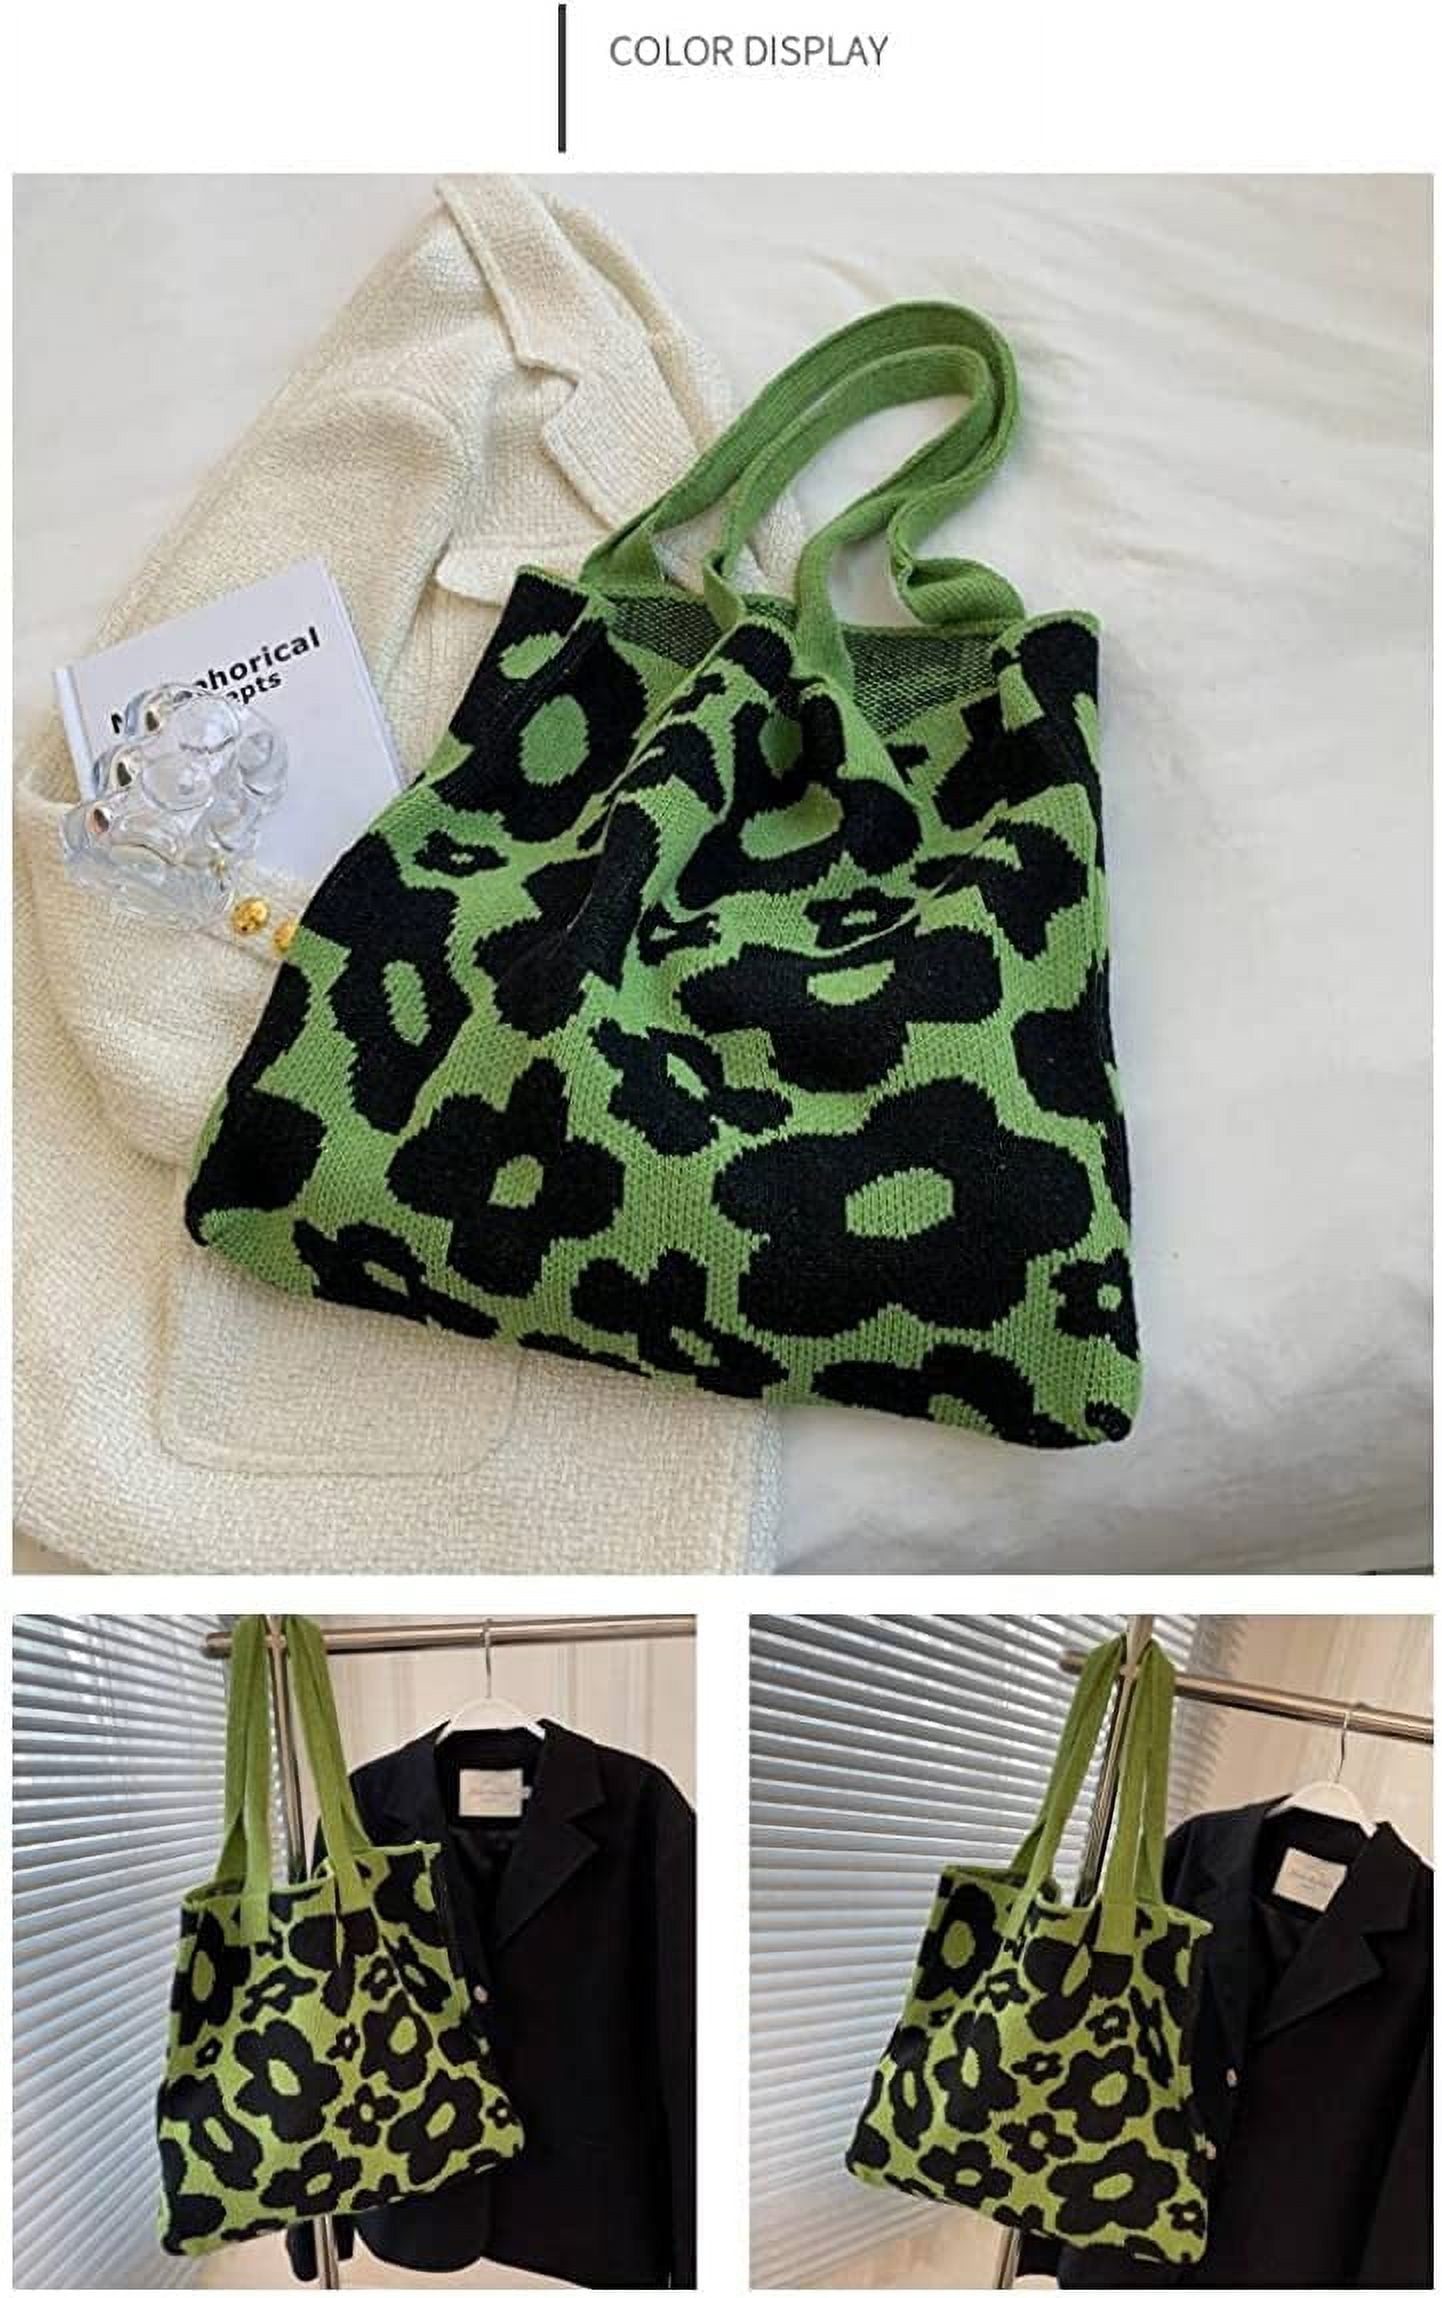 Y2k Vintage Tote Bag small Pentagram Tote Bag Shopping Bag Shoulder Bag  Large Capacity Shopping Bag Pink gradient flower Tote Bag